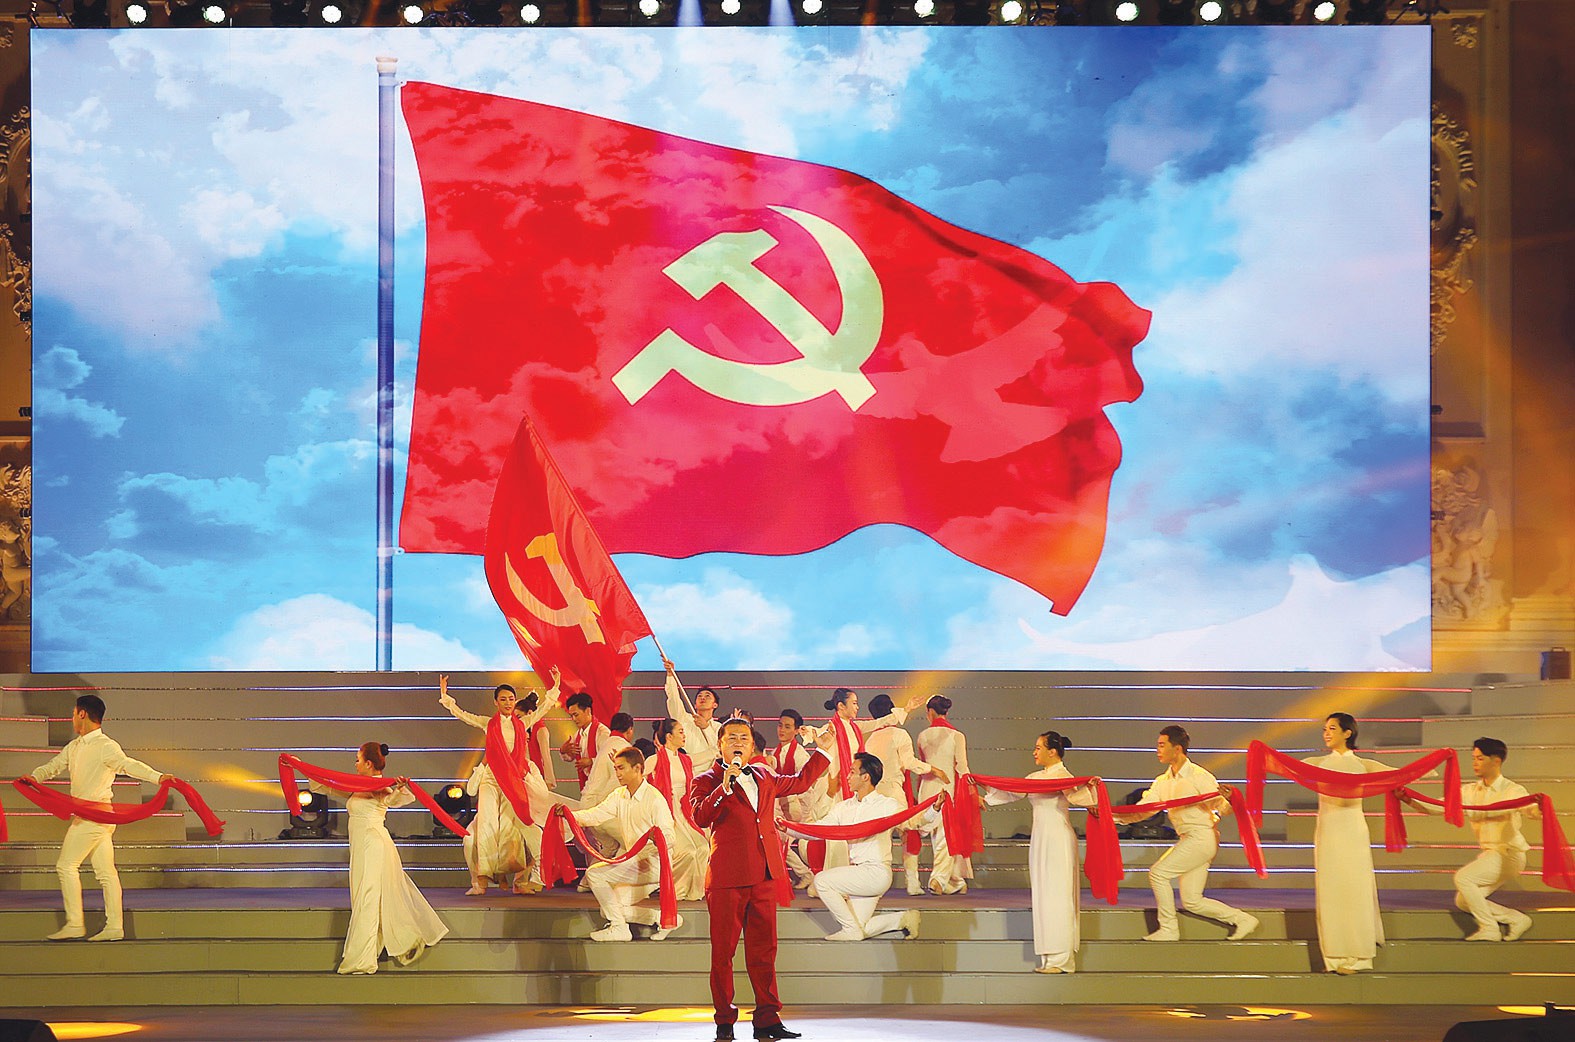 Đảng Cộng sản Việt Nam năm 2024 đang lính hữu cơ trong sự nghiệp phát triển đất nước, chú trọng đến việc đẩy mạnh kiến tạo, đổi mới và nâng cao năng lực cạnh tranh cho người dân. Hãy xem hình ảnh để tìm hiểu thêm về sự phát triển của đất nước dưới sự lãnh đạo của Đảng!